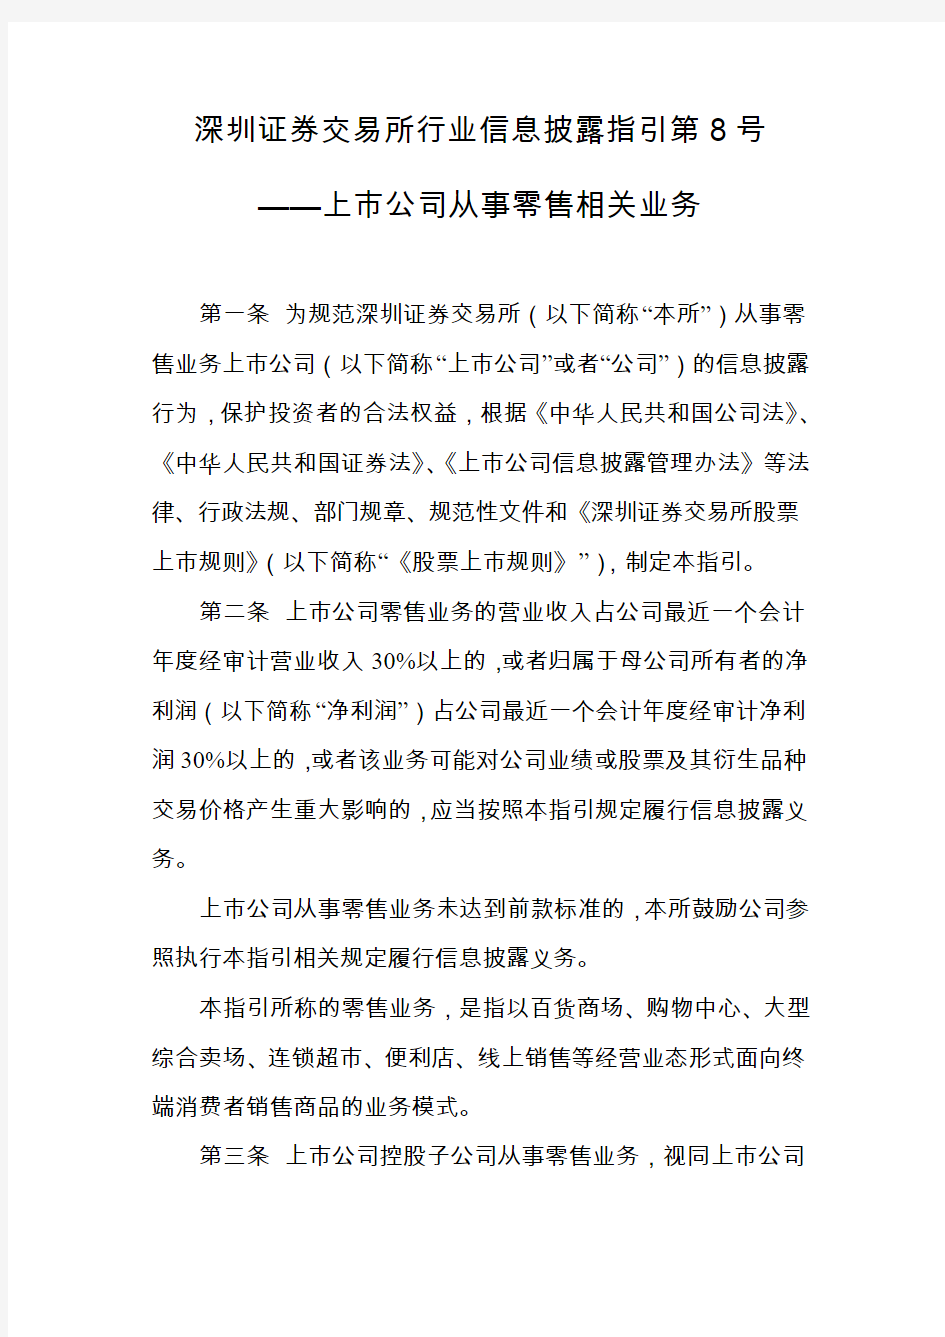 深圳证券交易所行业信息披露指引第8号——上市公司从事零售相关业务